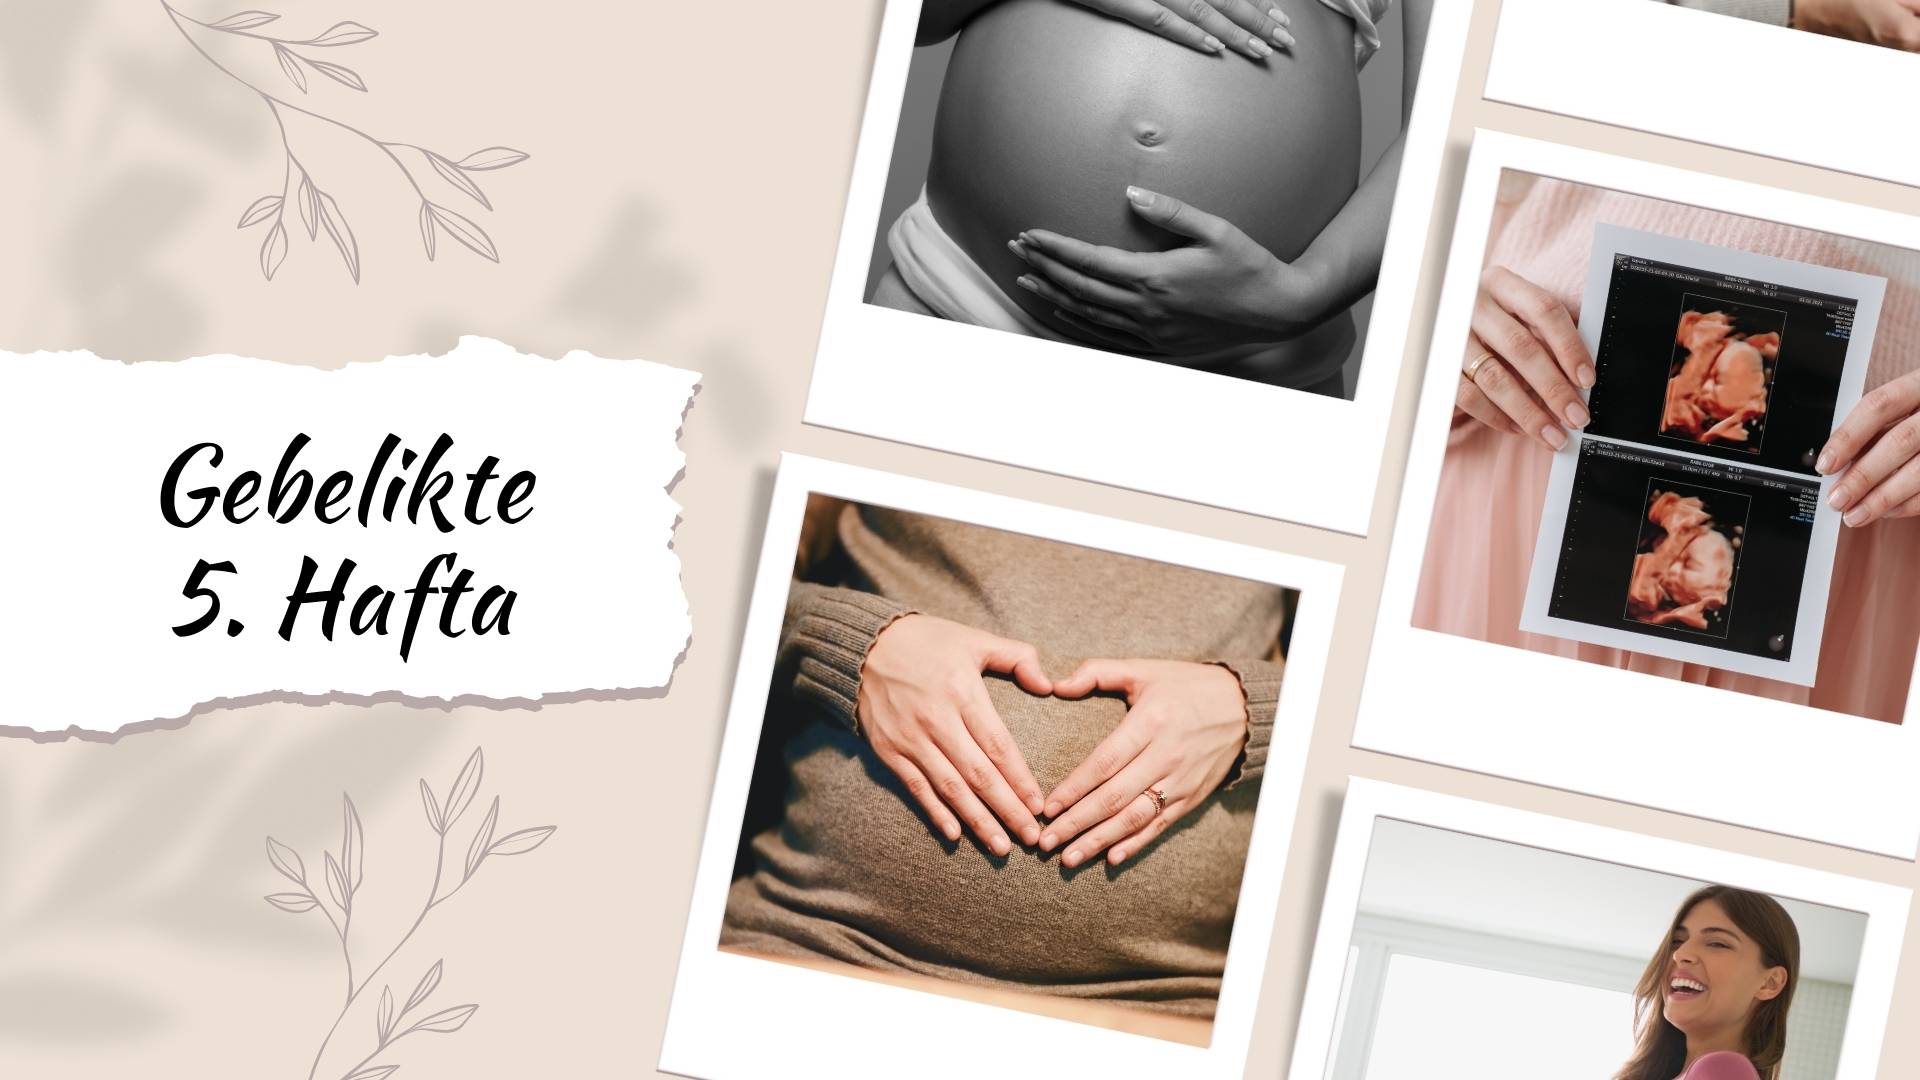 Hamilelikte 5. hafta gebelikte bebeğin gelişimi, sağlık önerileri, egzersiz seçenekleri ve semptomlar. Duygusal destek, bebeğin odası planlama, ebeveynlik tavsiyeleri ve cilt bakımı.